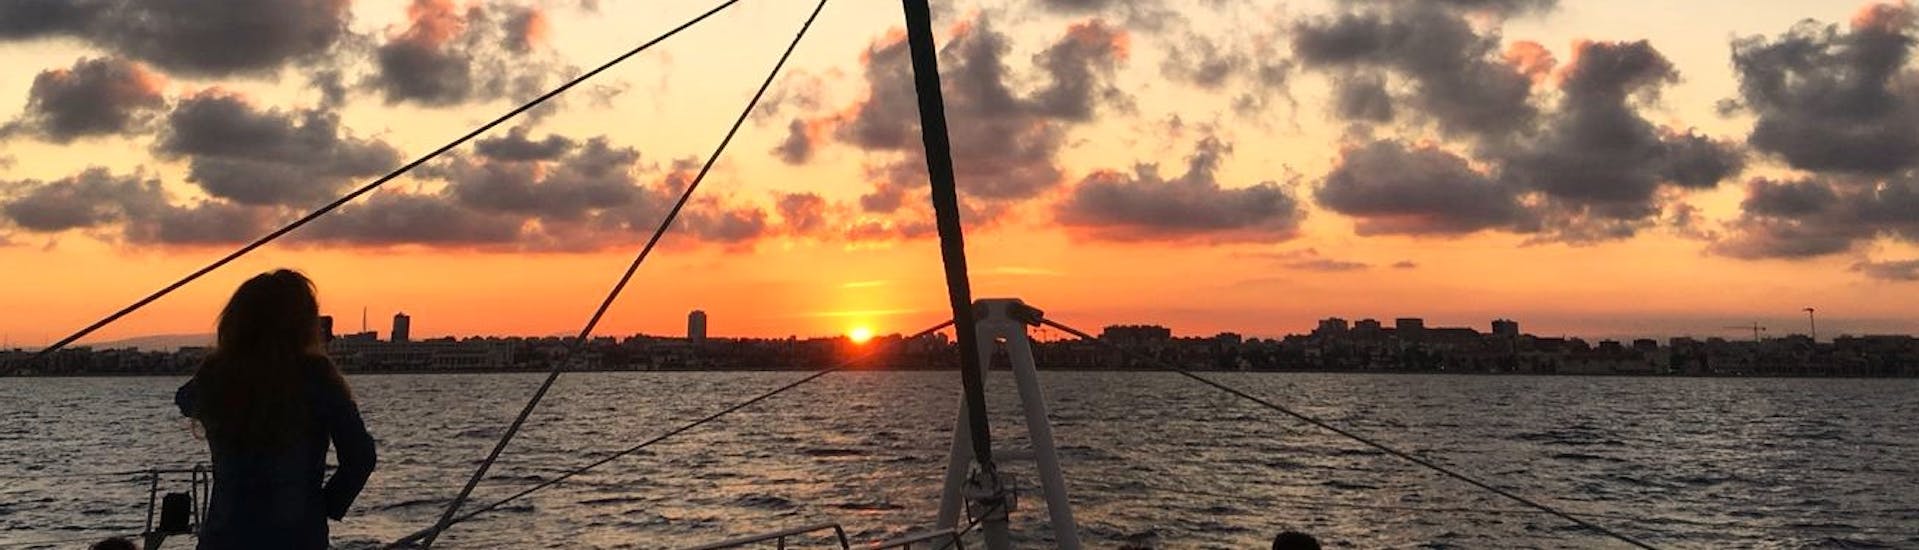 Preciosa puesta de sol sobre la bahía de Málaga, con tonalidades rojas y naranjas durante un paseo en catamaran con Mundo Marino Costa del Sol.